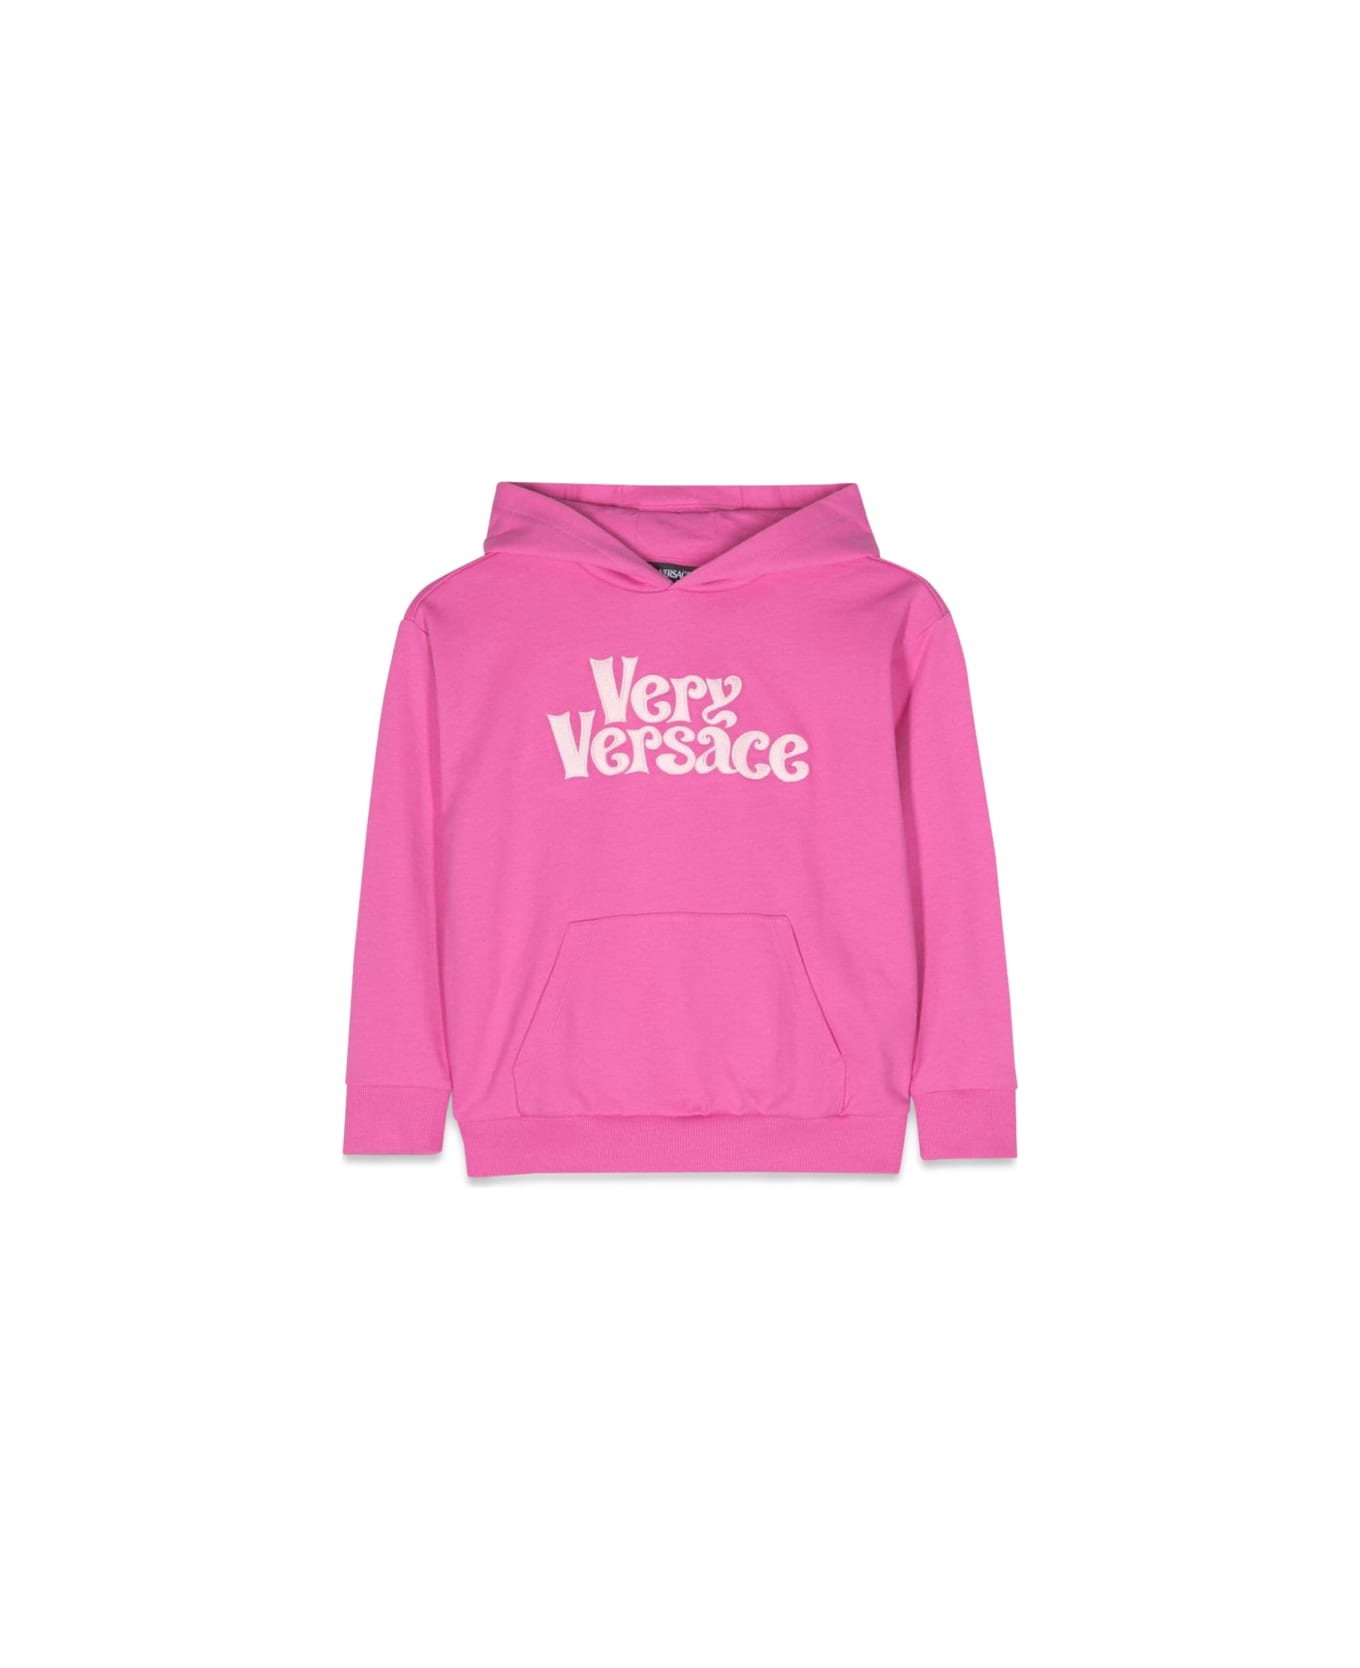 Versace Sweatshirt Fleece Very Versace Embroidery - PINK